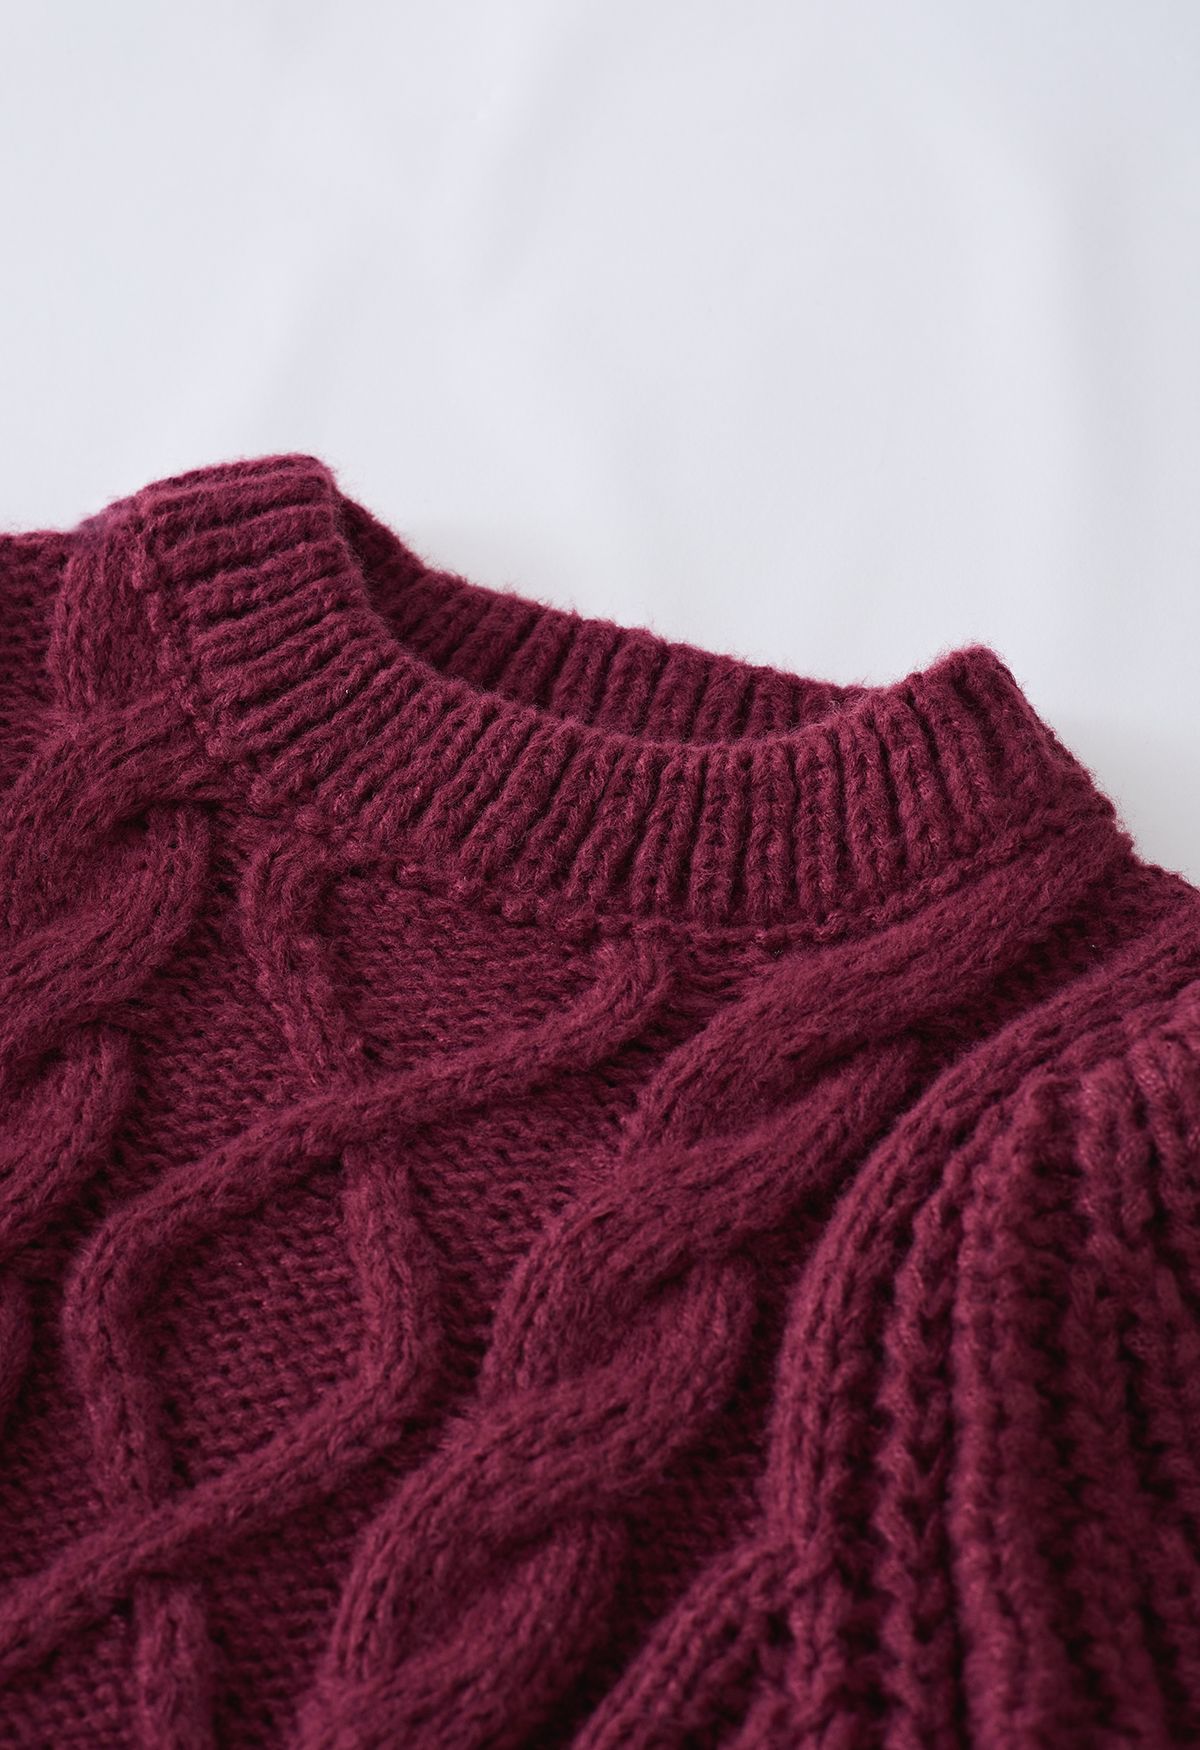 Suéter com nervuras trançado manga bolha em Borgonha